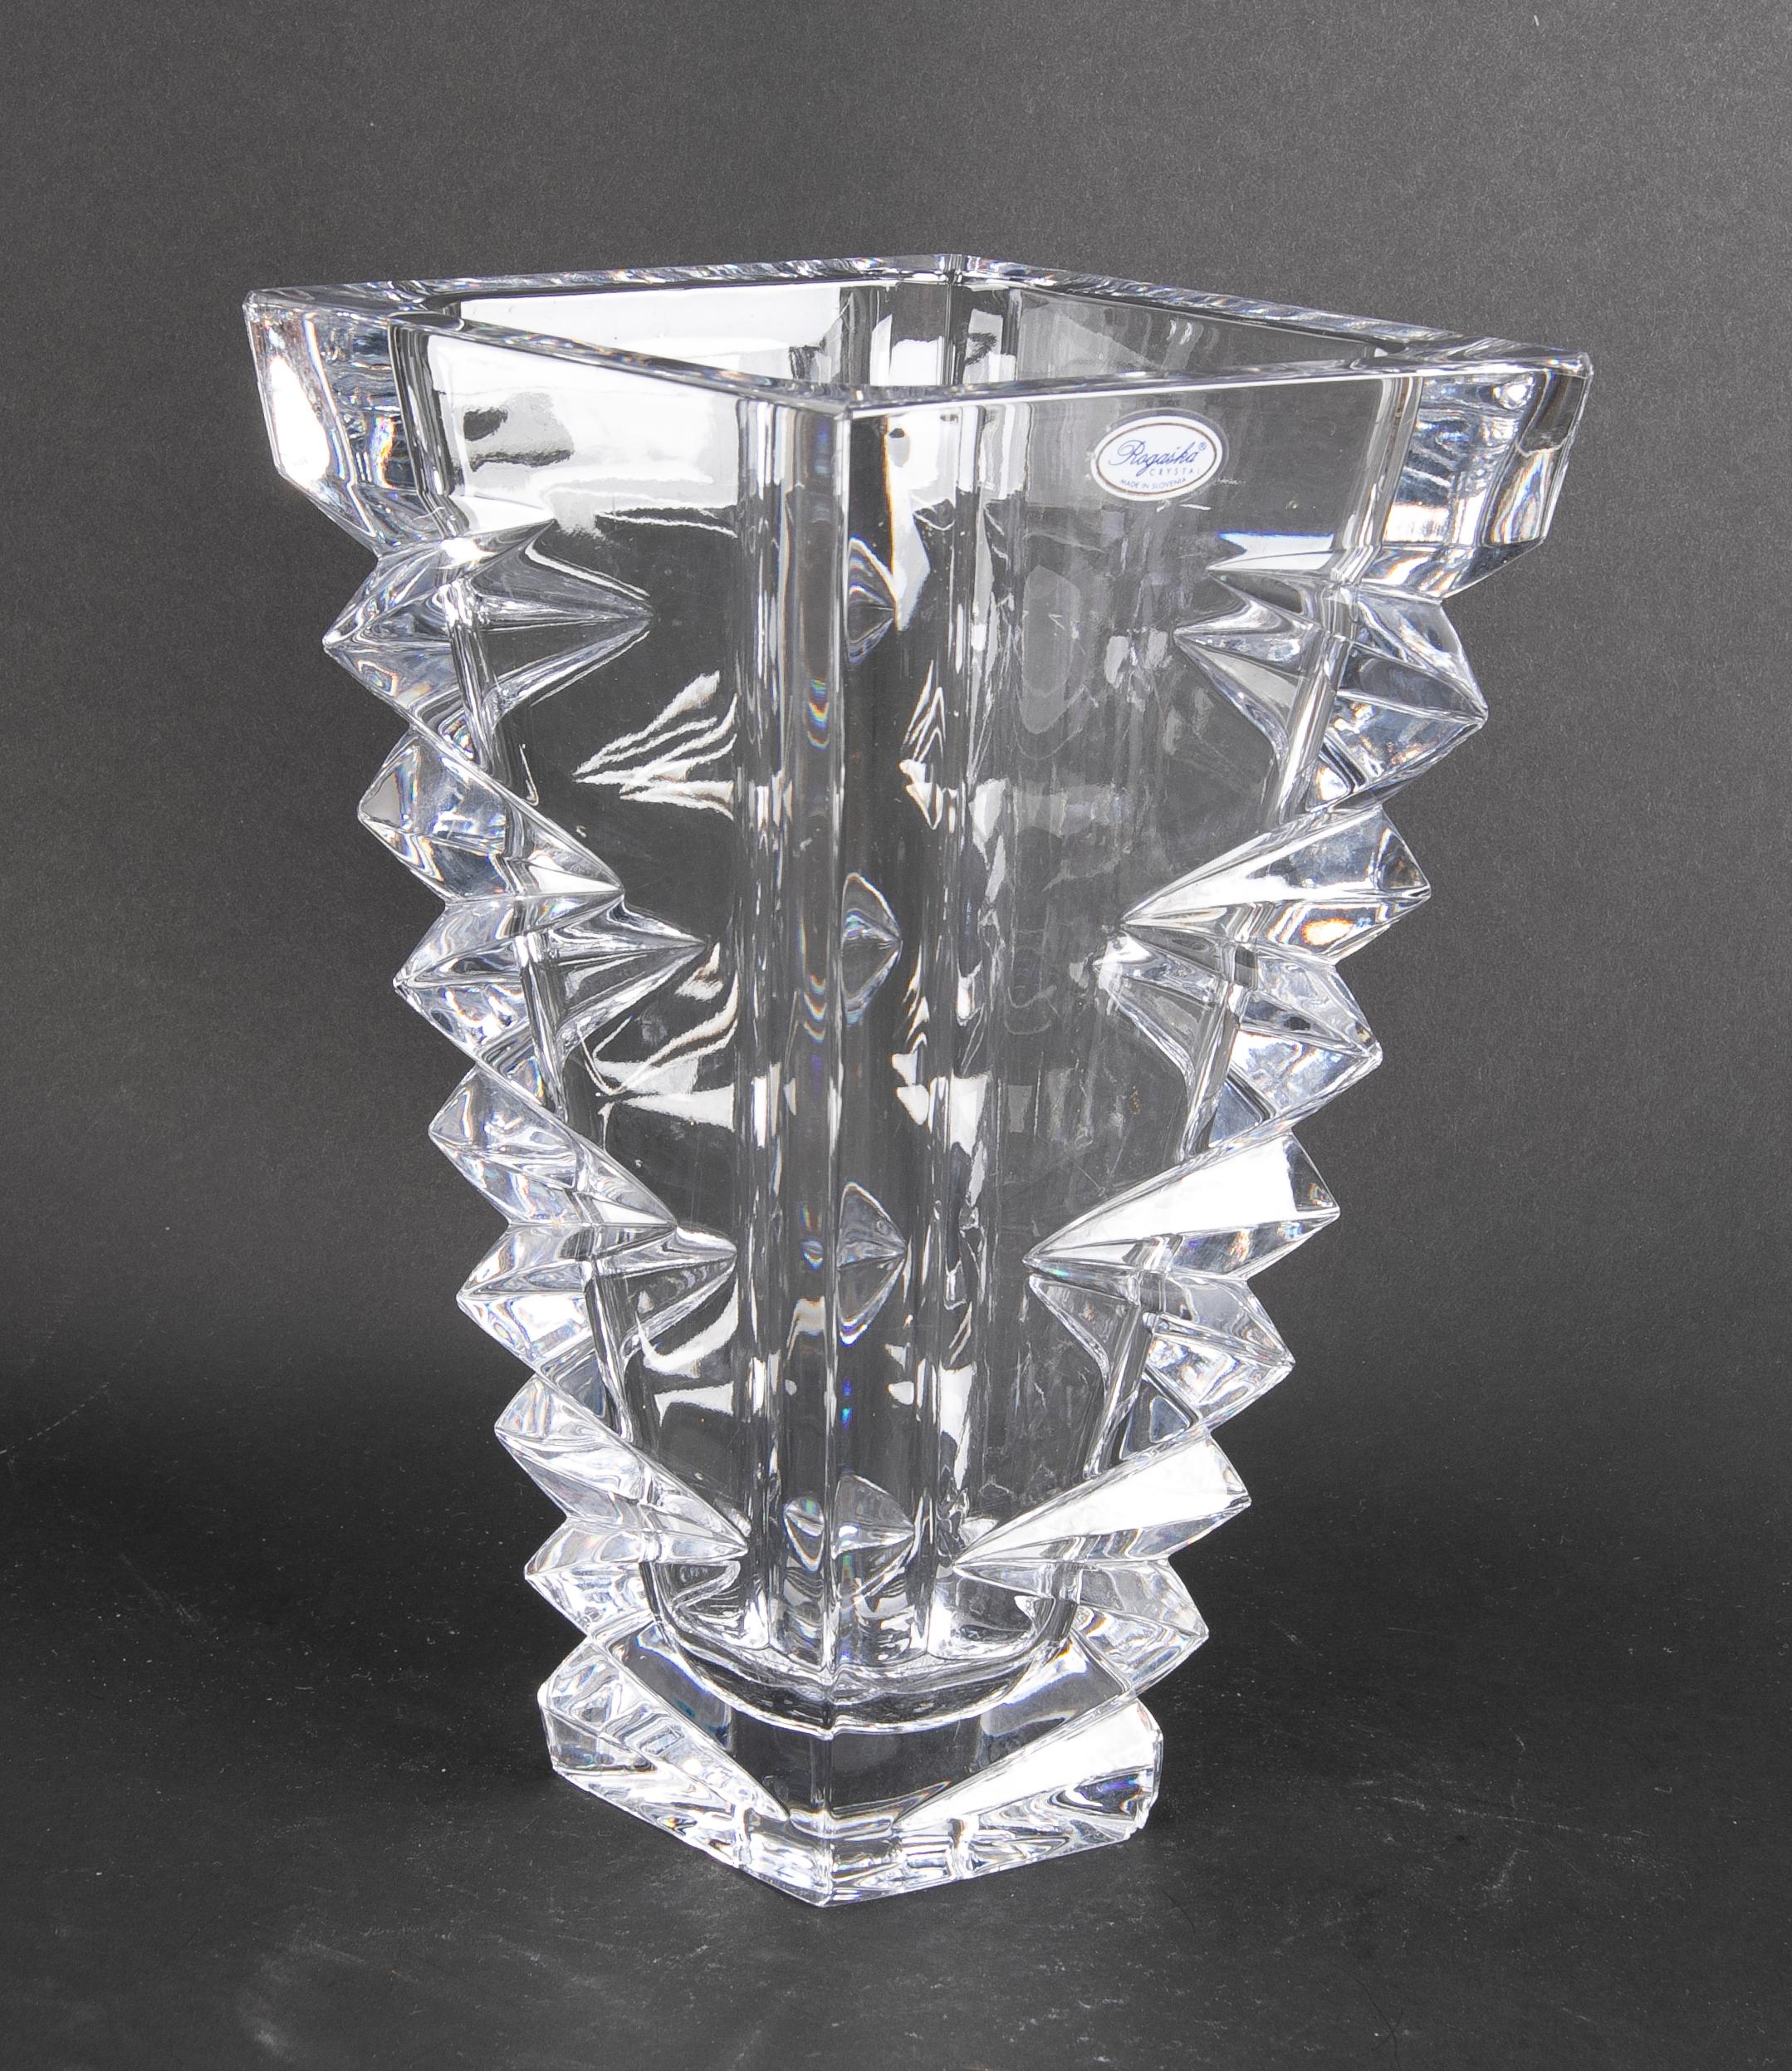 Handgefertigte Vase aus massivem Kristall.